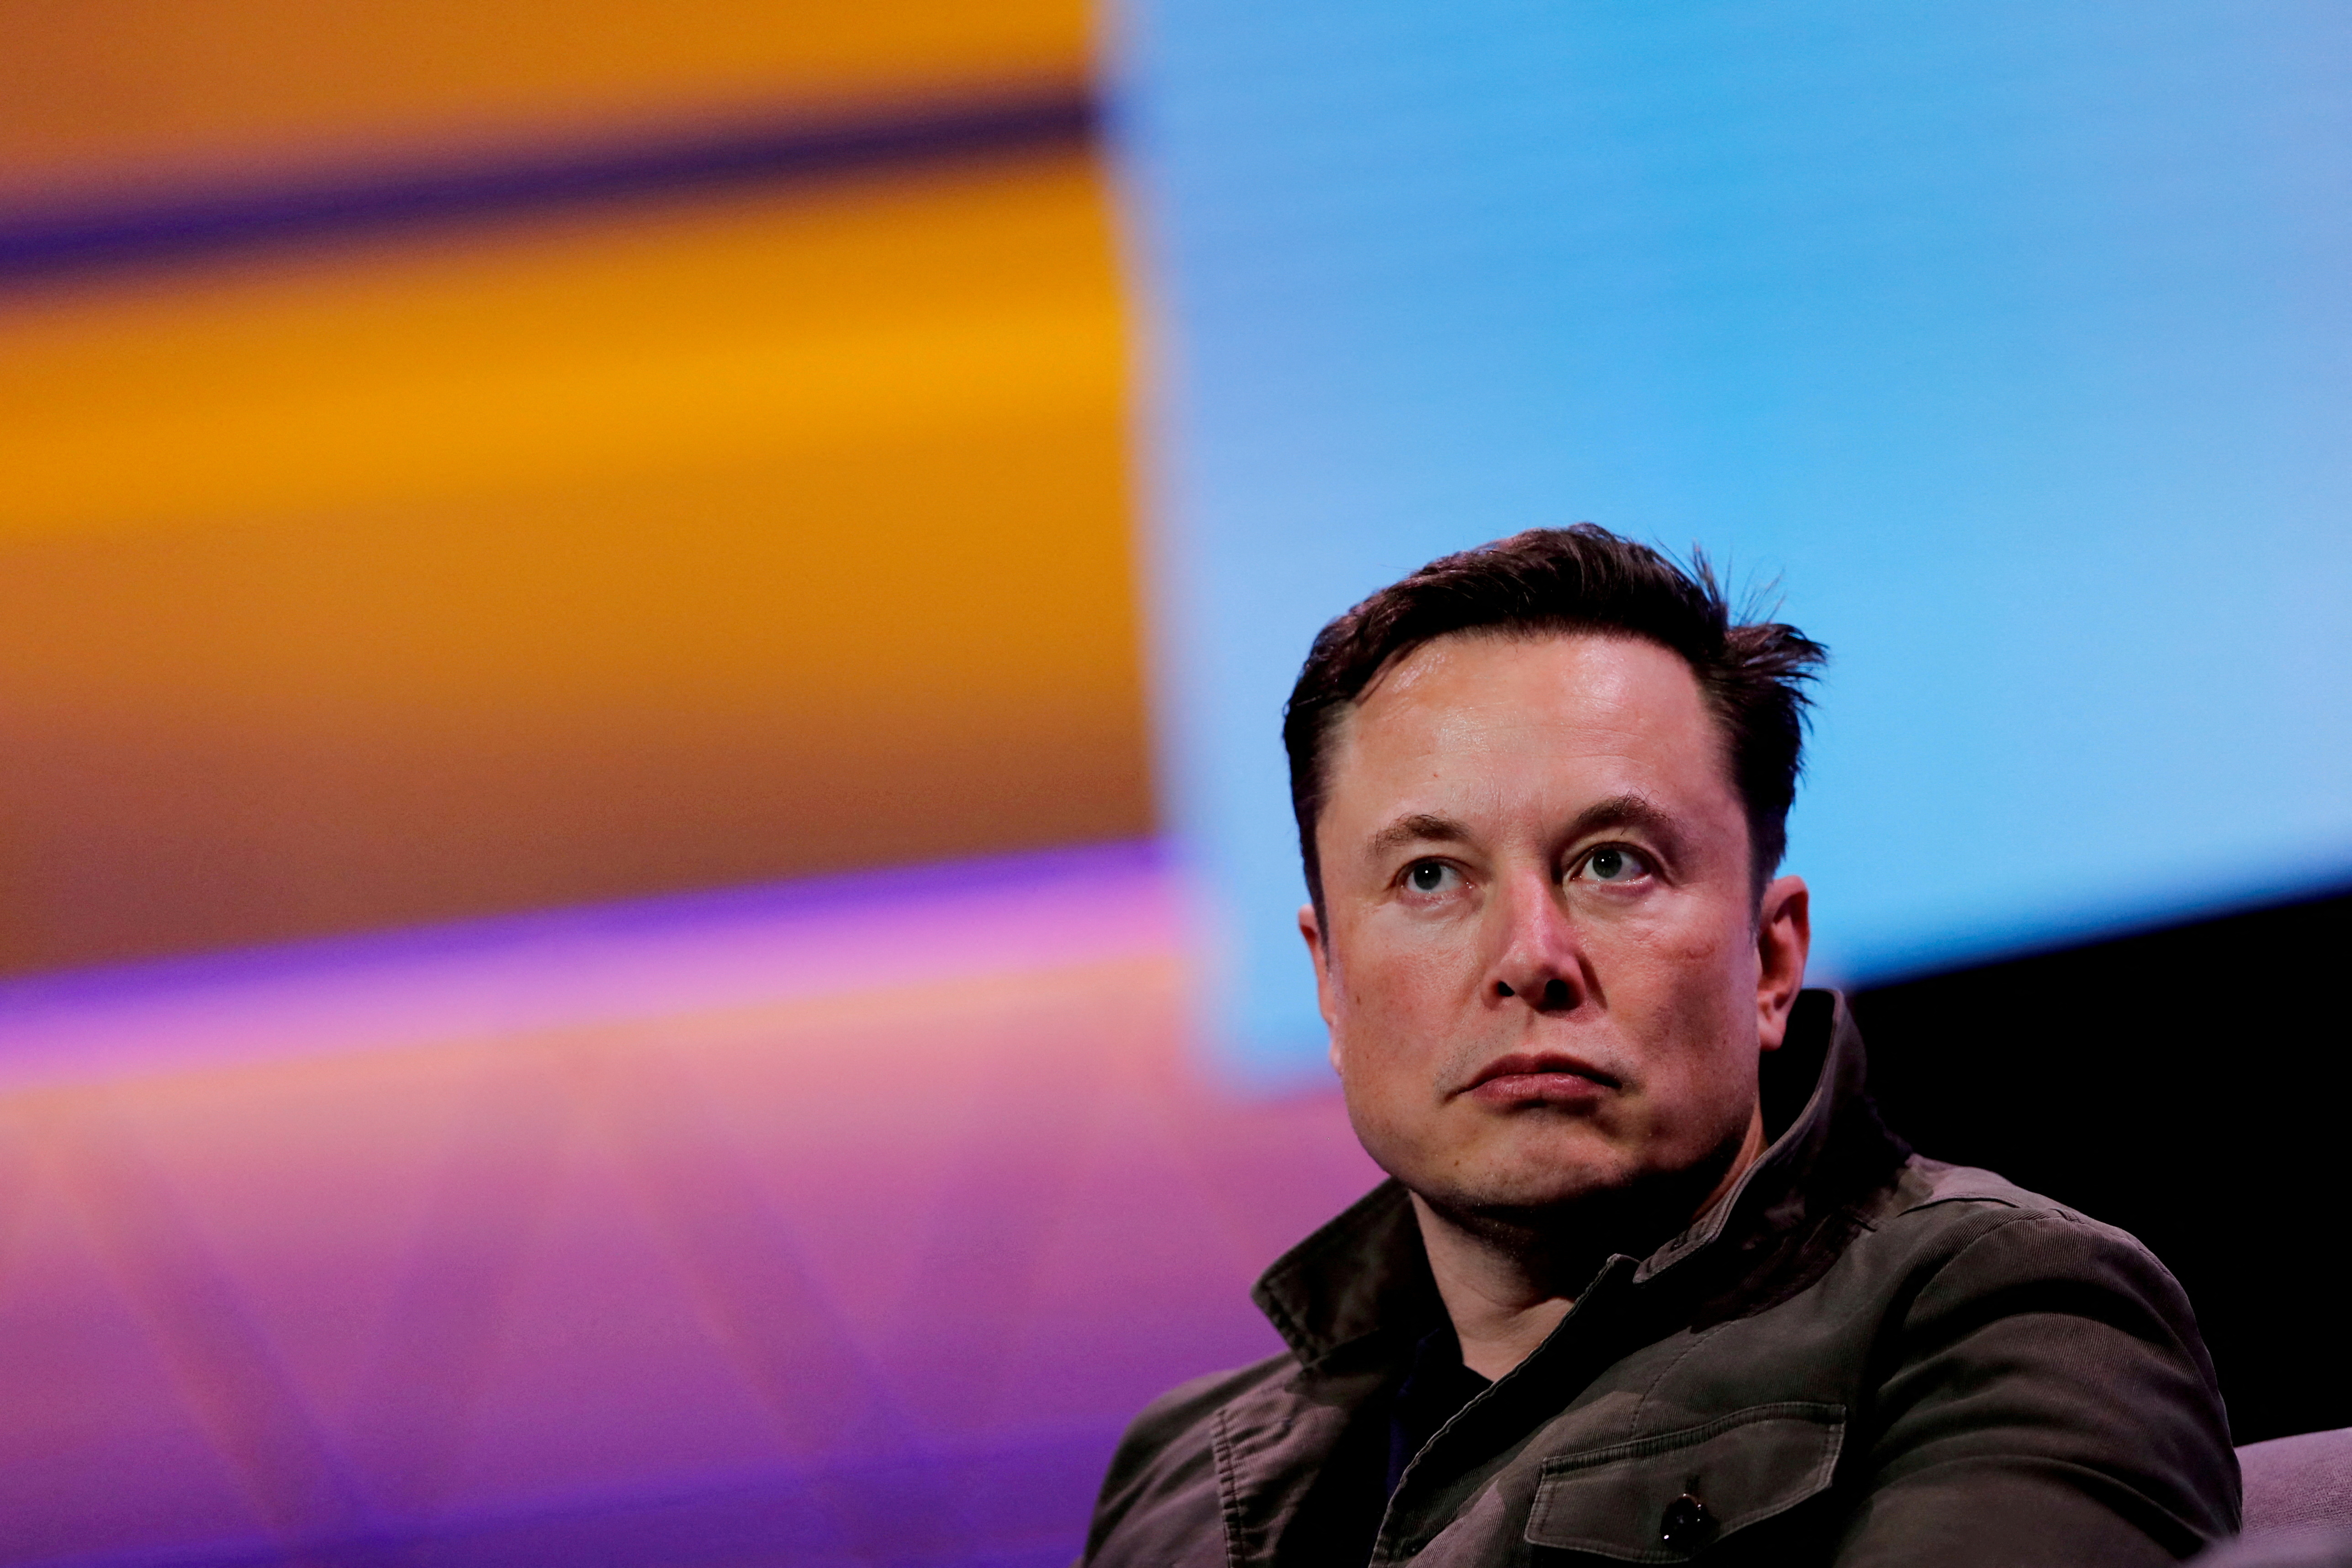 FOTO FILE: Pemilik SpaceX dan CEO Tesla Elon Musk berbicara selama percakapan dengan desainer game legendaris Todd Howard (tidak digambarkan) di konvensi game E3 di Los Angeles, California, AS, 13 Juni 2019. REUTERS/Mike Blake/File Foto